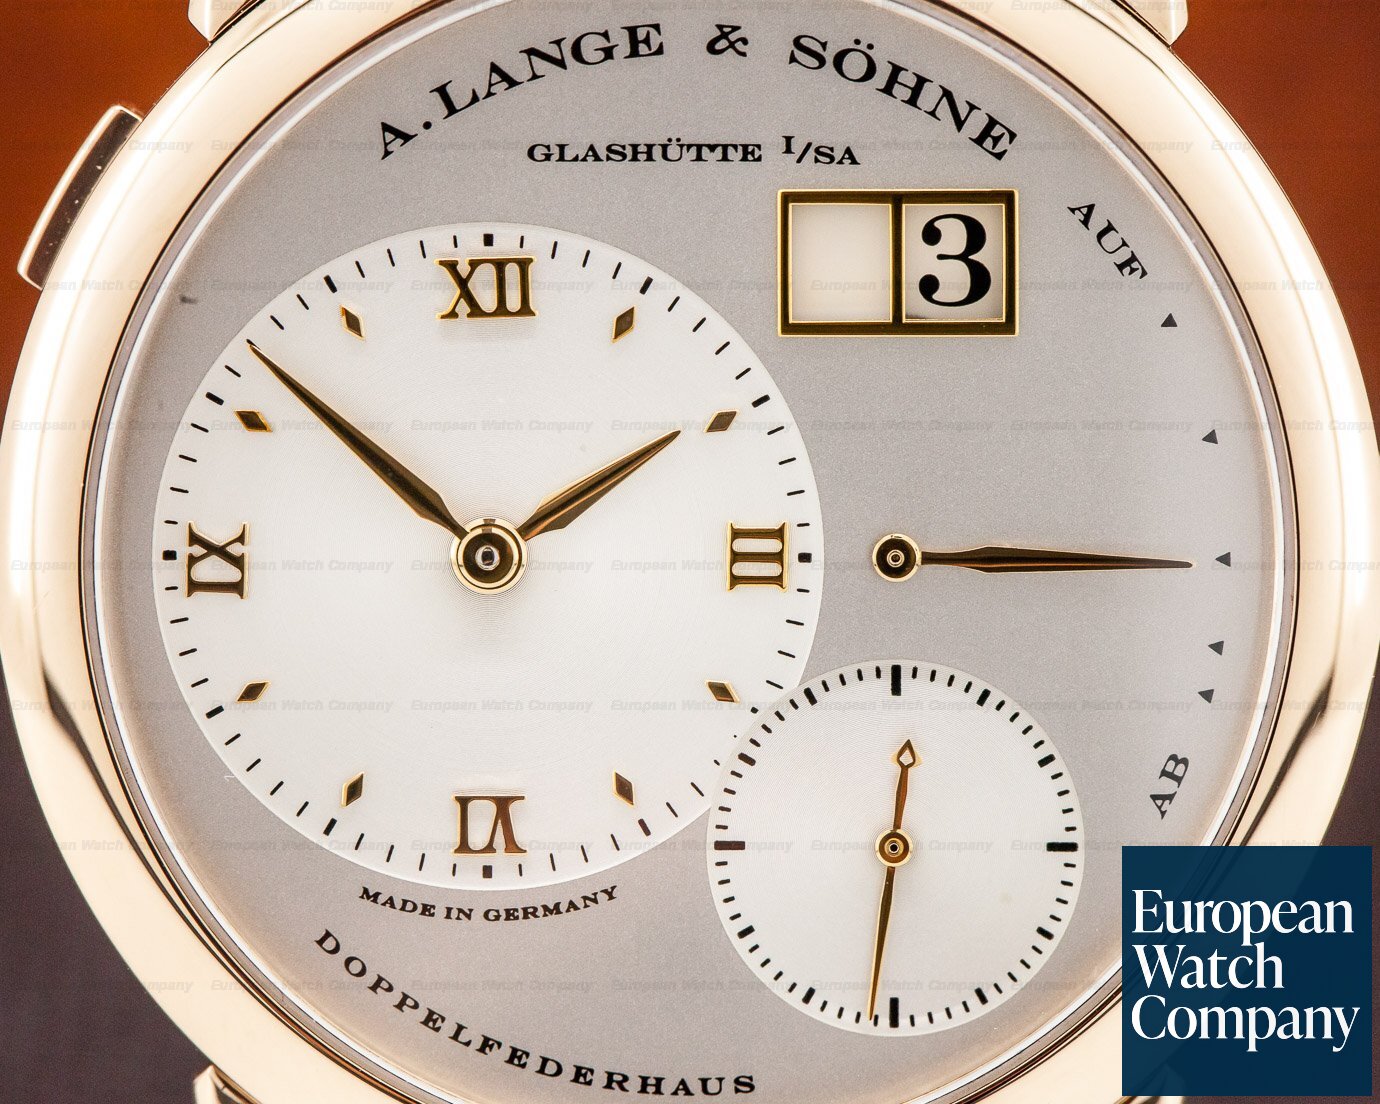 A. Lange and Sohne Lange 1 18K Rose Gold Silver Dial Ref. 101.032